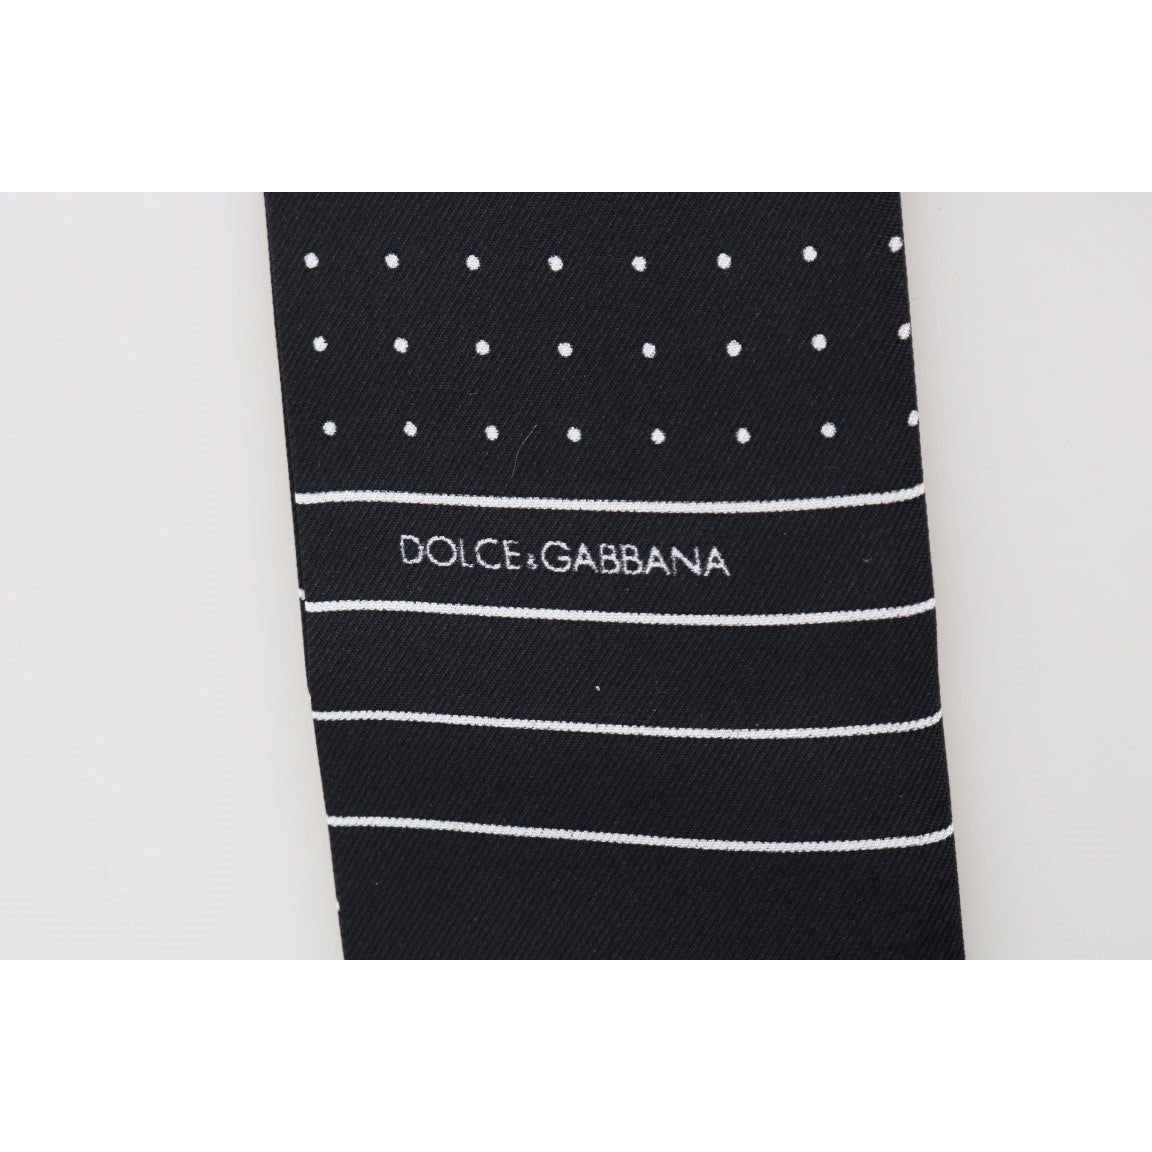 Dolce & Gabbana Elegant Silk Men's Tie Scarf Wrap dark-blue-polka-dotted-silk-scarf 491857-dark-blue-polka-dotted-silk-scarf-3.jpg